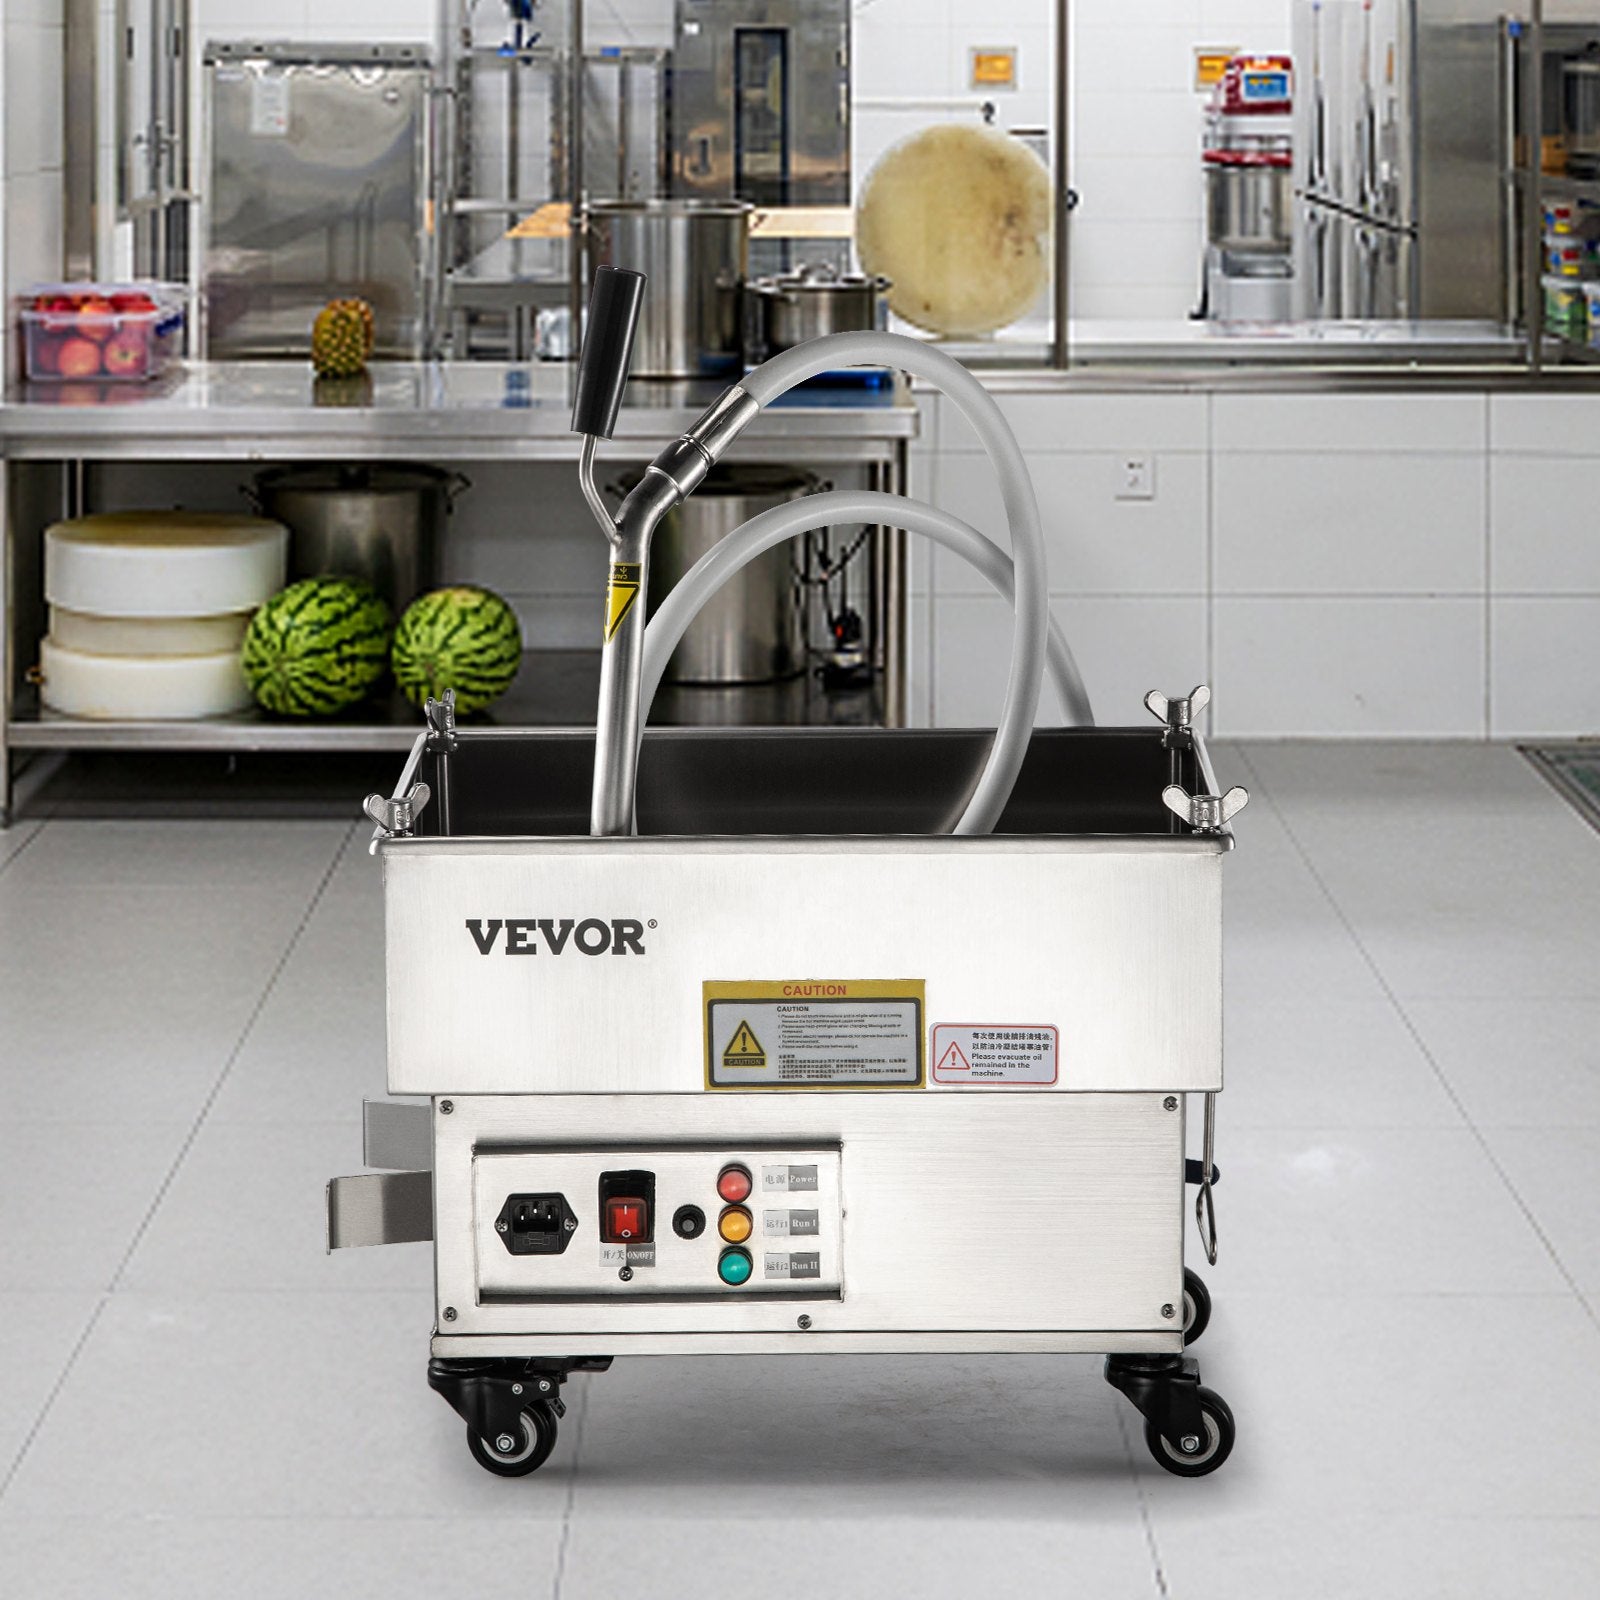 VEVOR Mobile Fryer Filter, 44 LBS/22 L/5.8 Gal Capacity, 110V/60Hz - $615